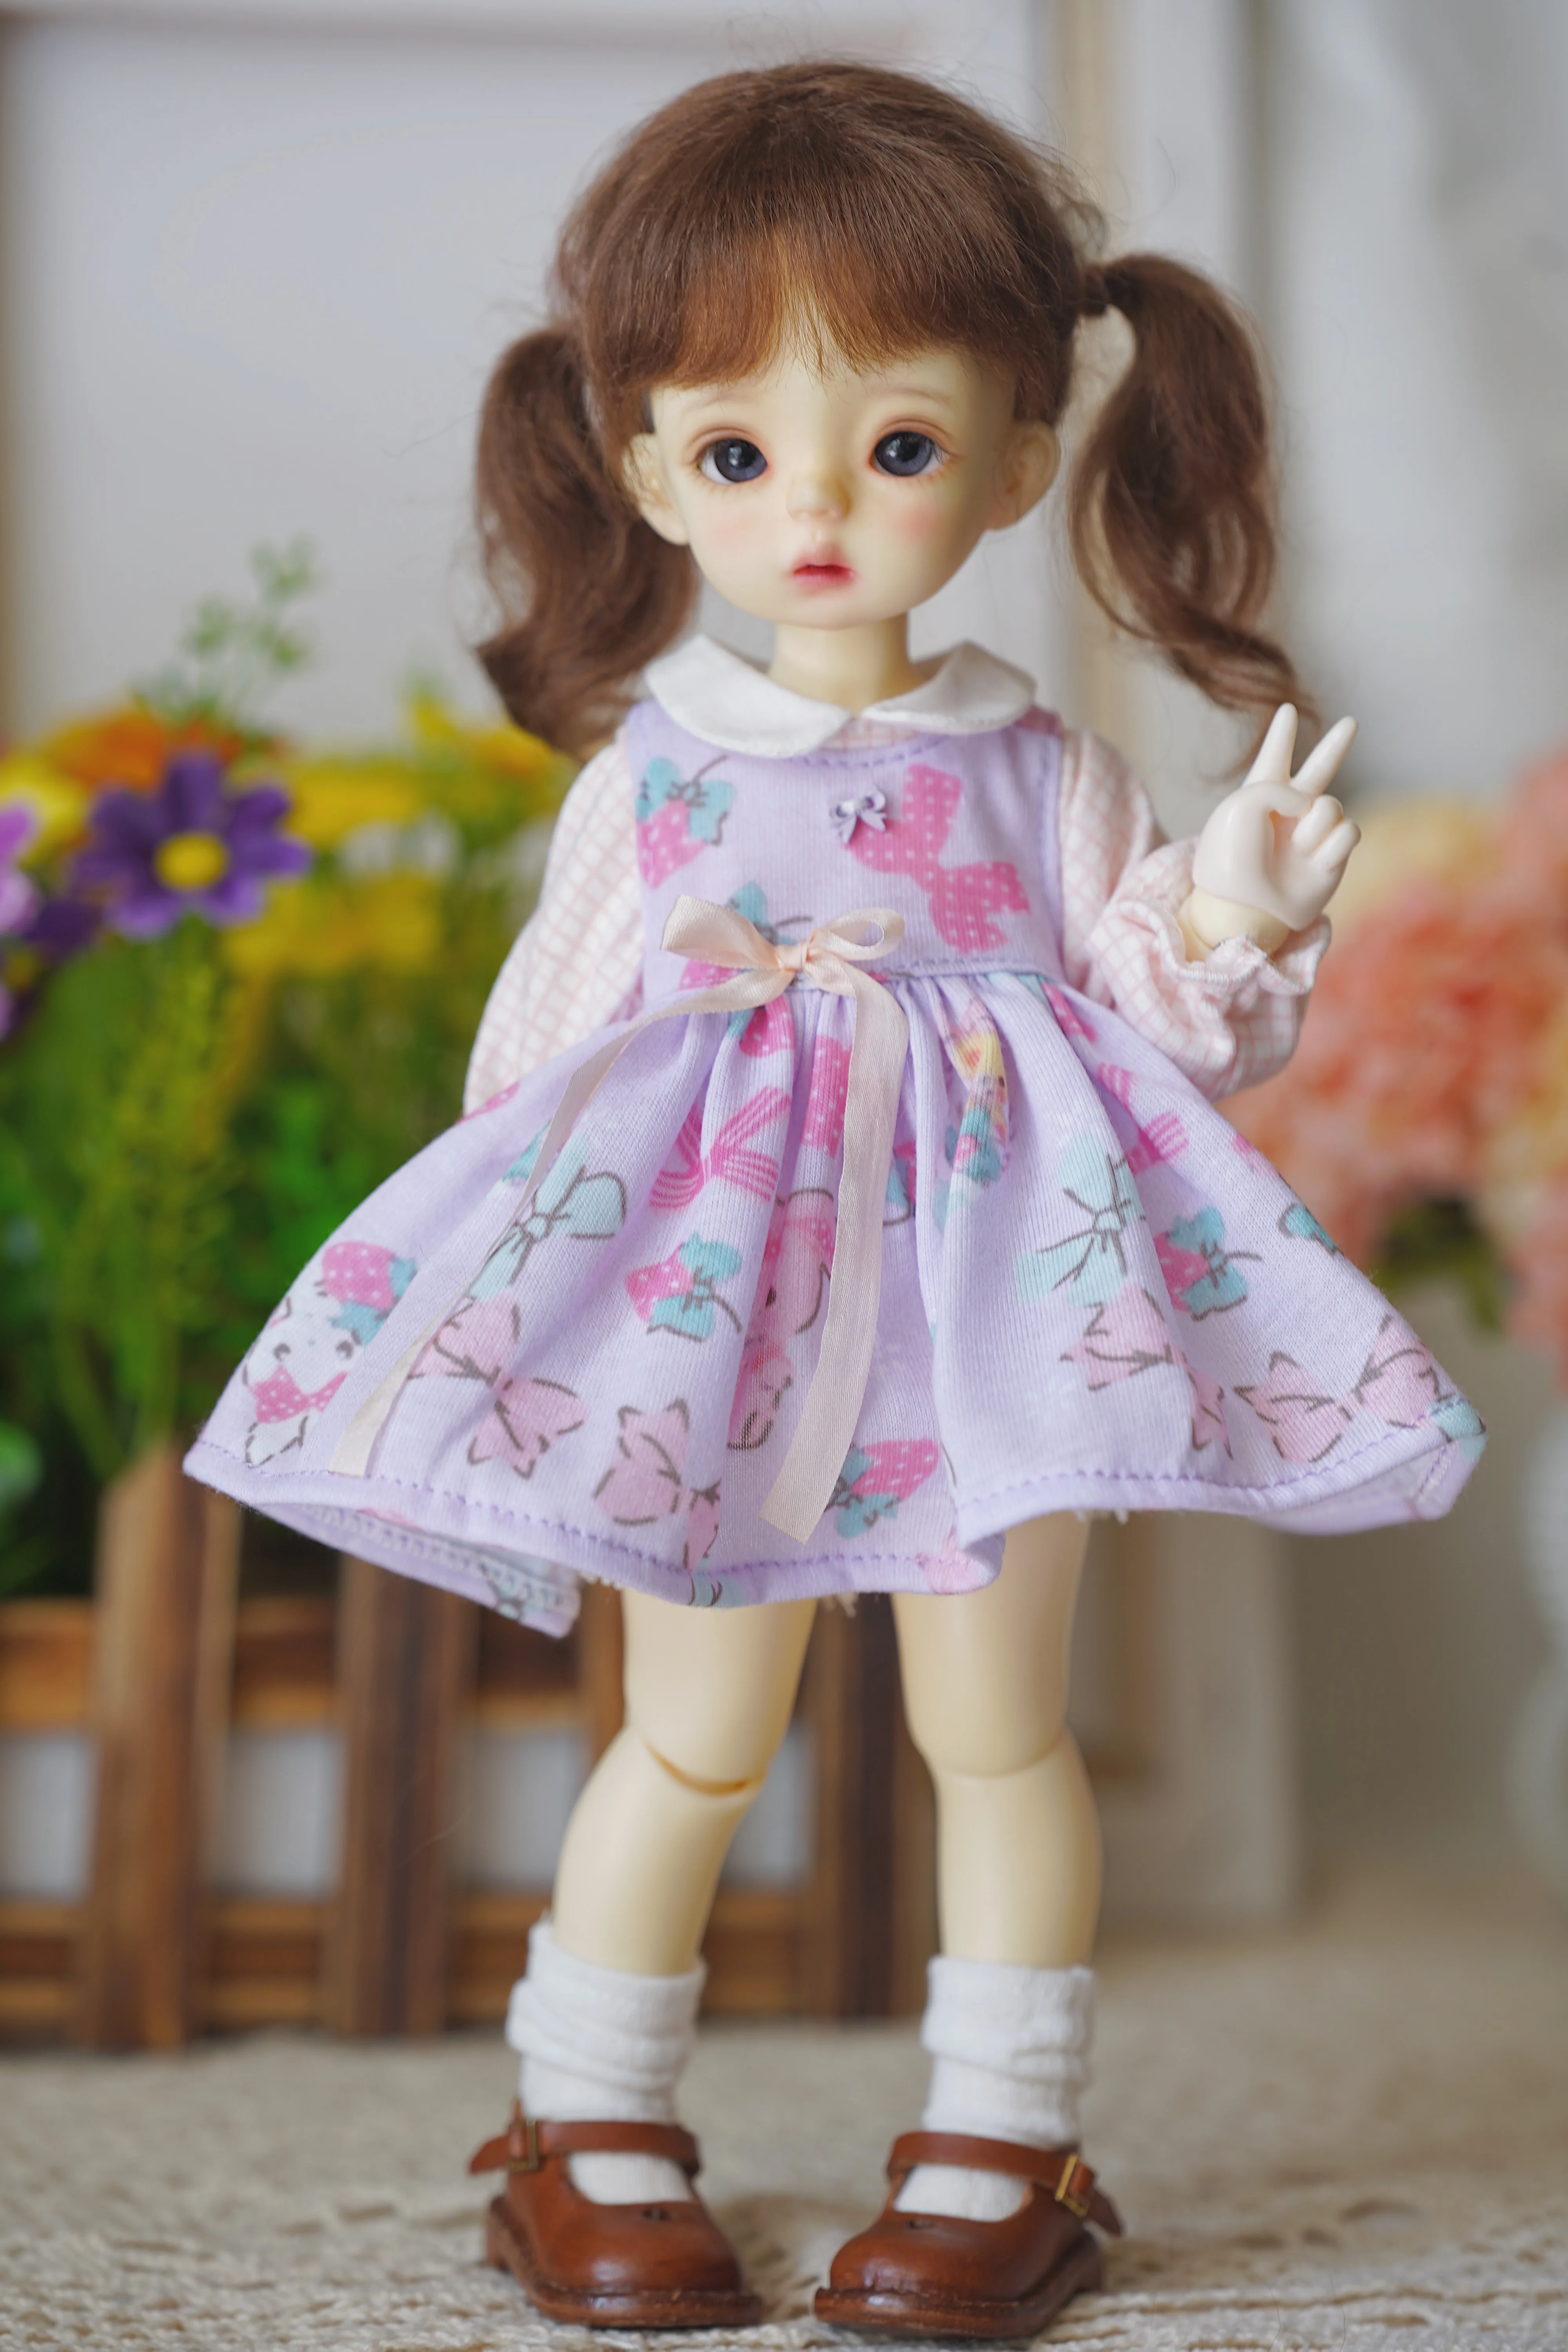 

BJD кукольная юбка костюм подойдет для детей в возрасте от 1 до 6 лет размер YOSD ежедневно фиолетовый костюм юбка аксессуары для куклы